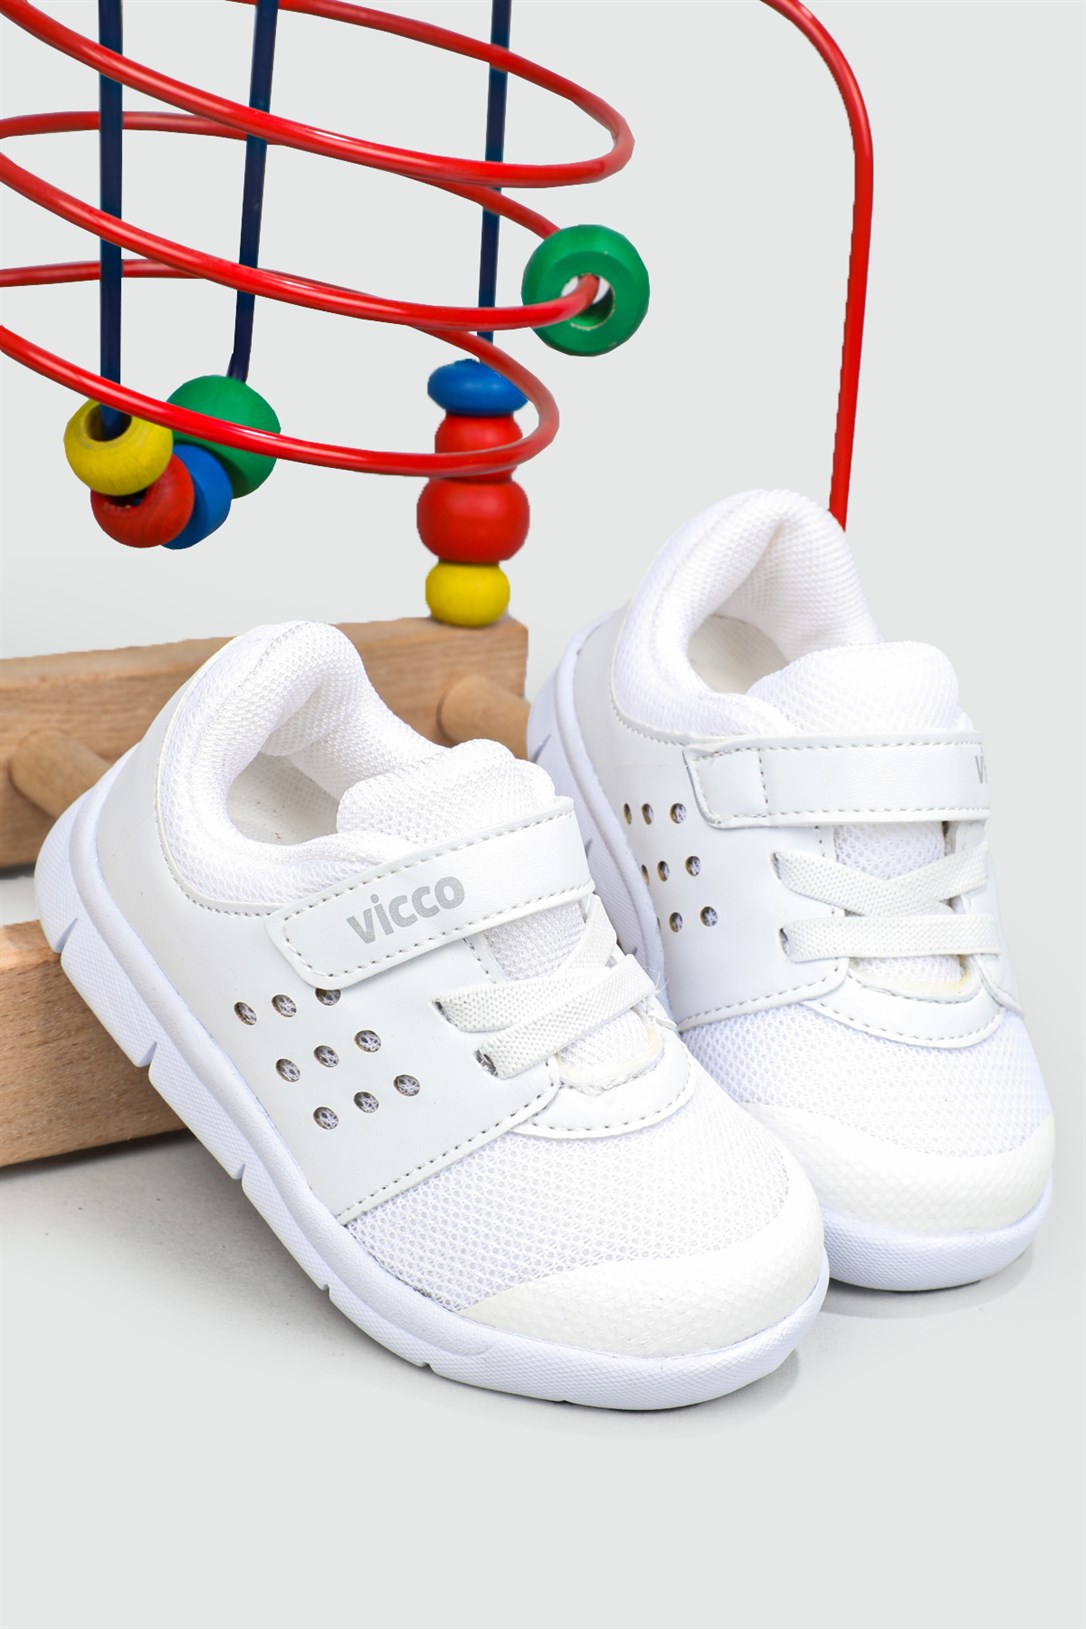 Vicco Ortopedik Beyaz Çocuk Spor Ayakkabı 200